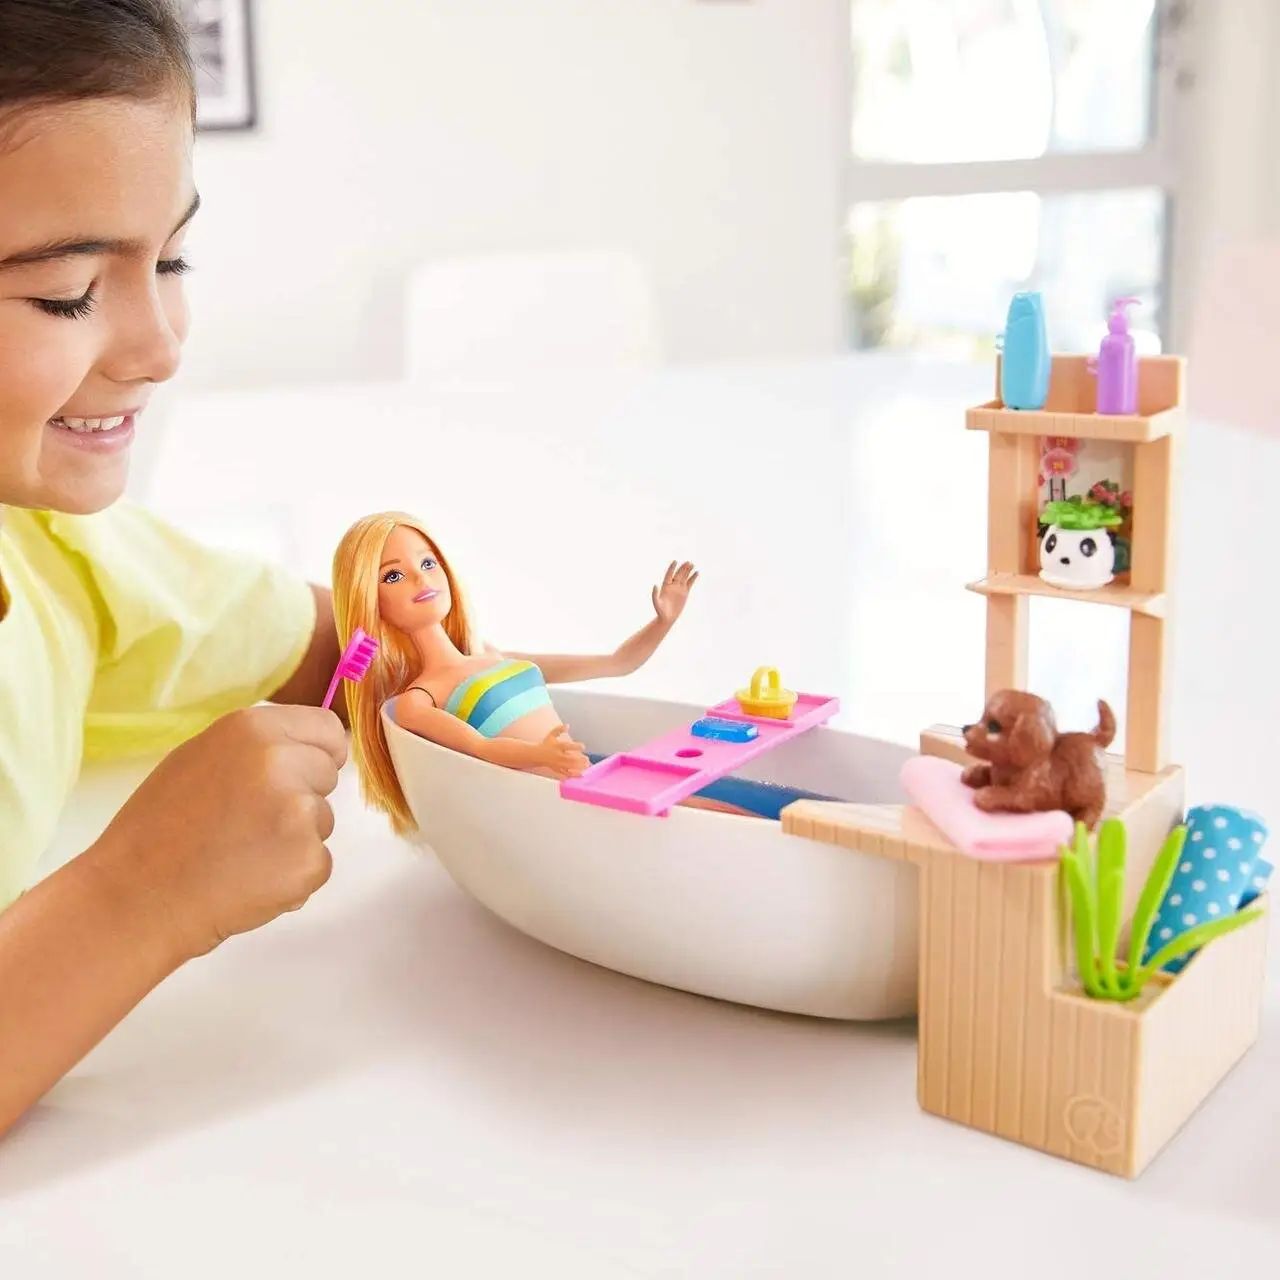 Игровой набор Barbie Fizzy Bath Doll&Playset, 28 см - фото 6